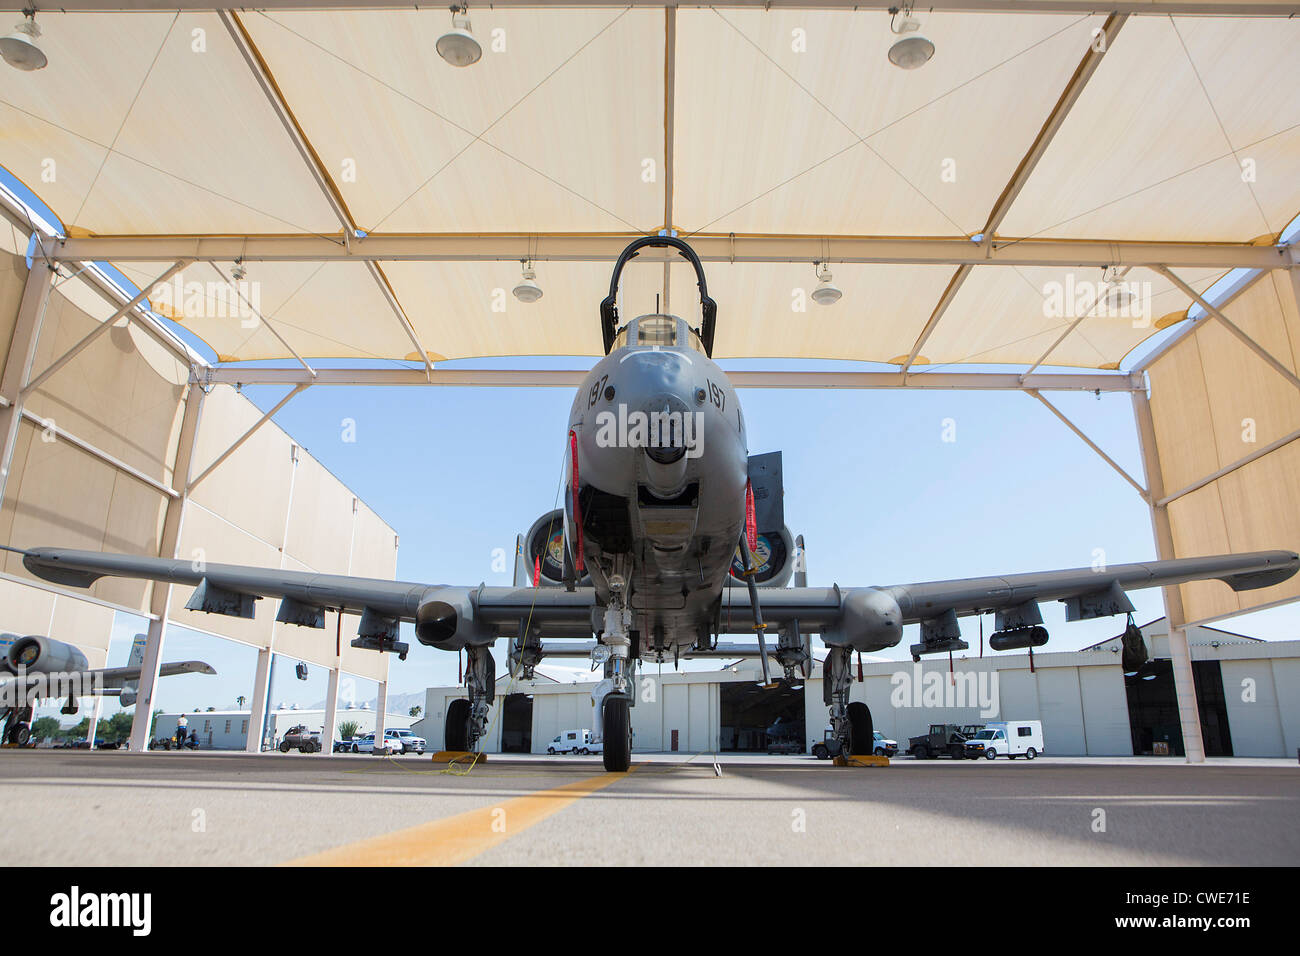 Un A-10 Thunderbolt du 354e Escadron de chasse se trouve stationné dans un hangar de la base aérienne Davis-Monthan Air Force Base. Banque D'Images